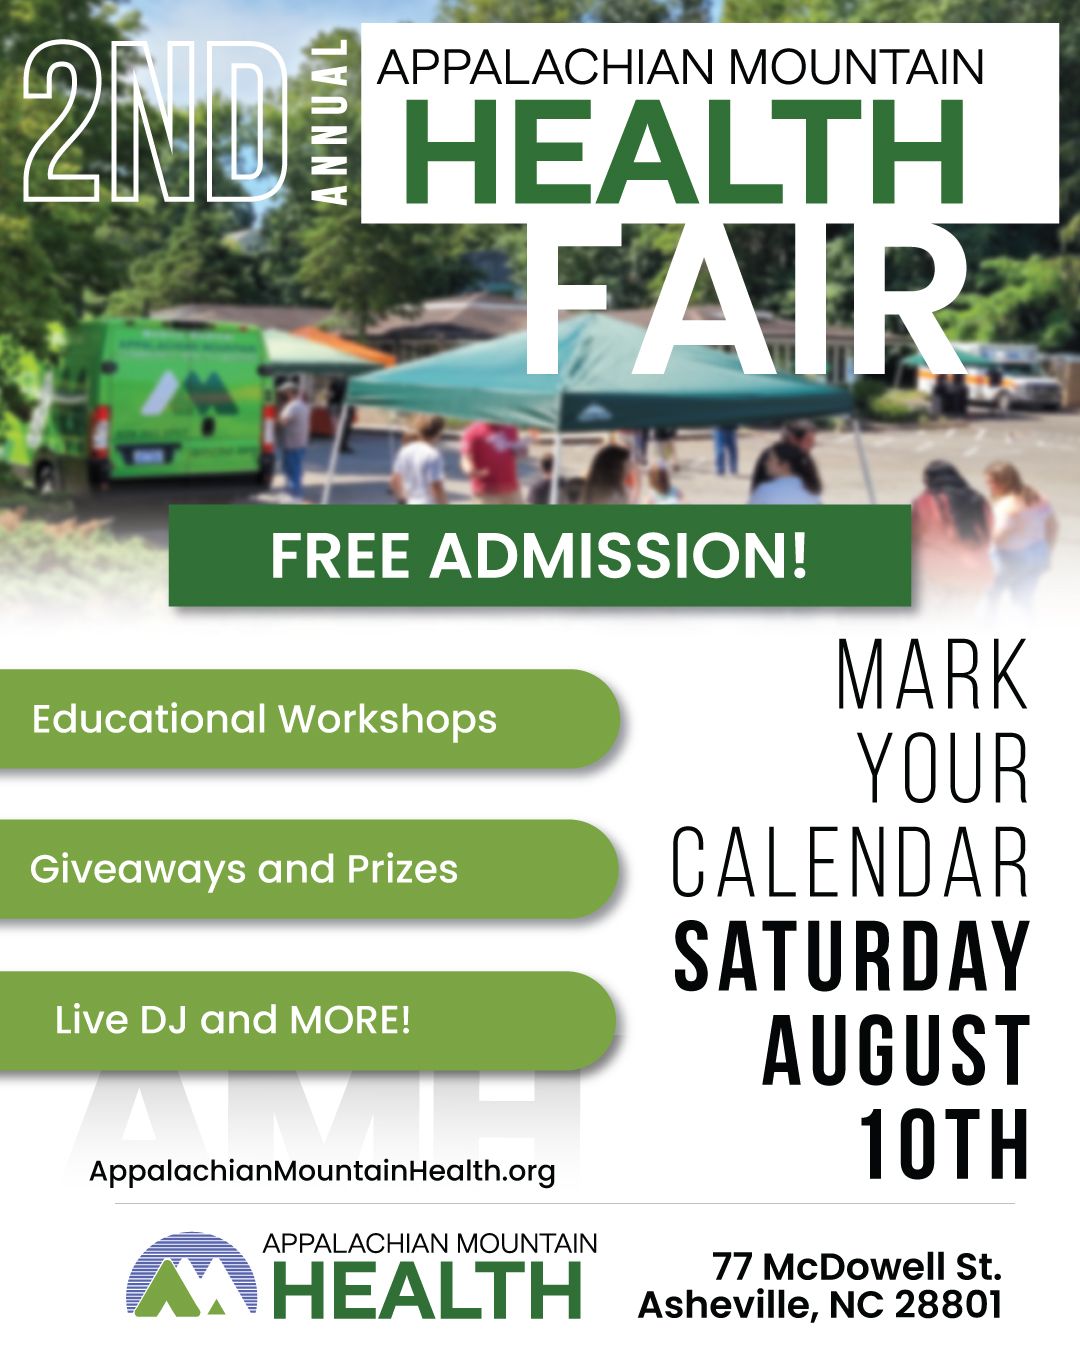 Appalachian Mountain Health 2nd Annual Health Fair